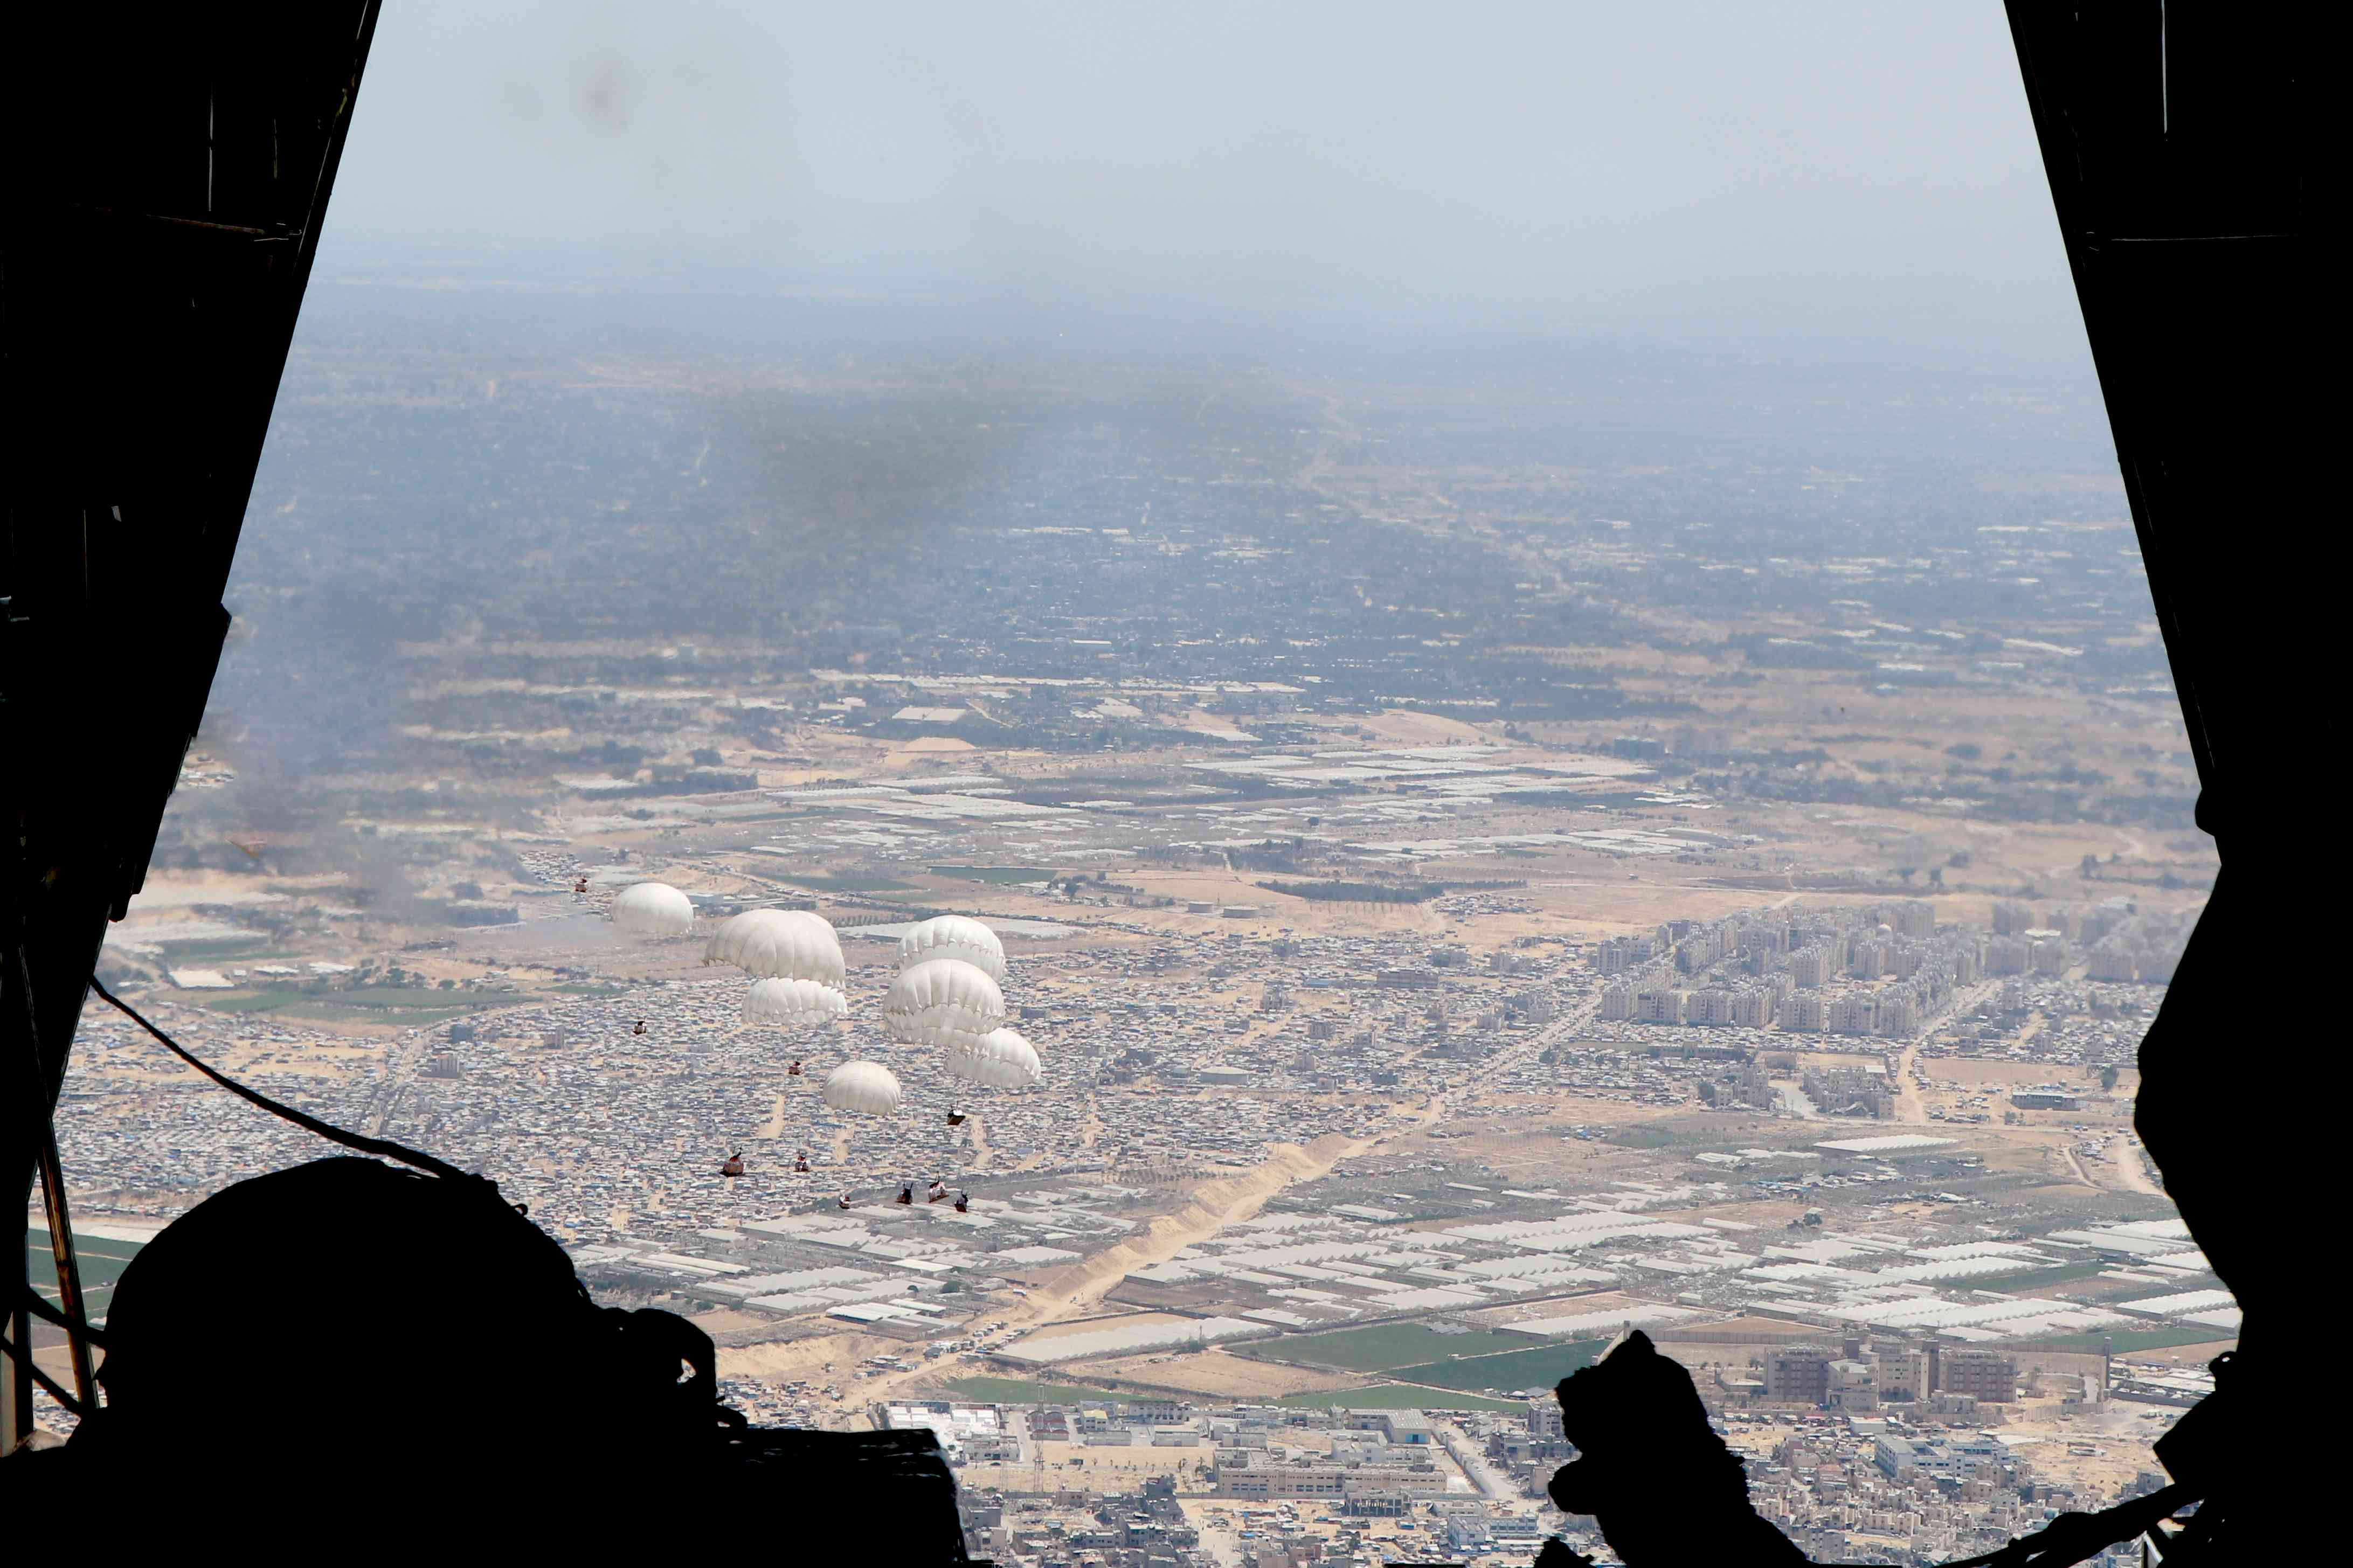 القوات المسلحة تنفذ إنزالين جويين اليوم (صور)